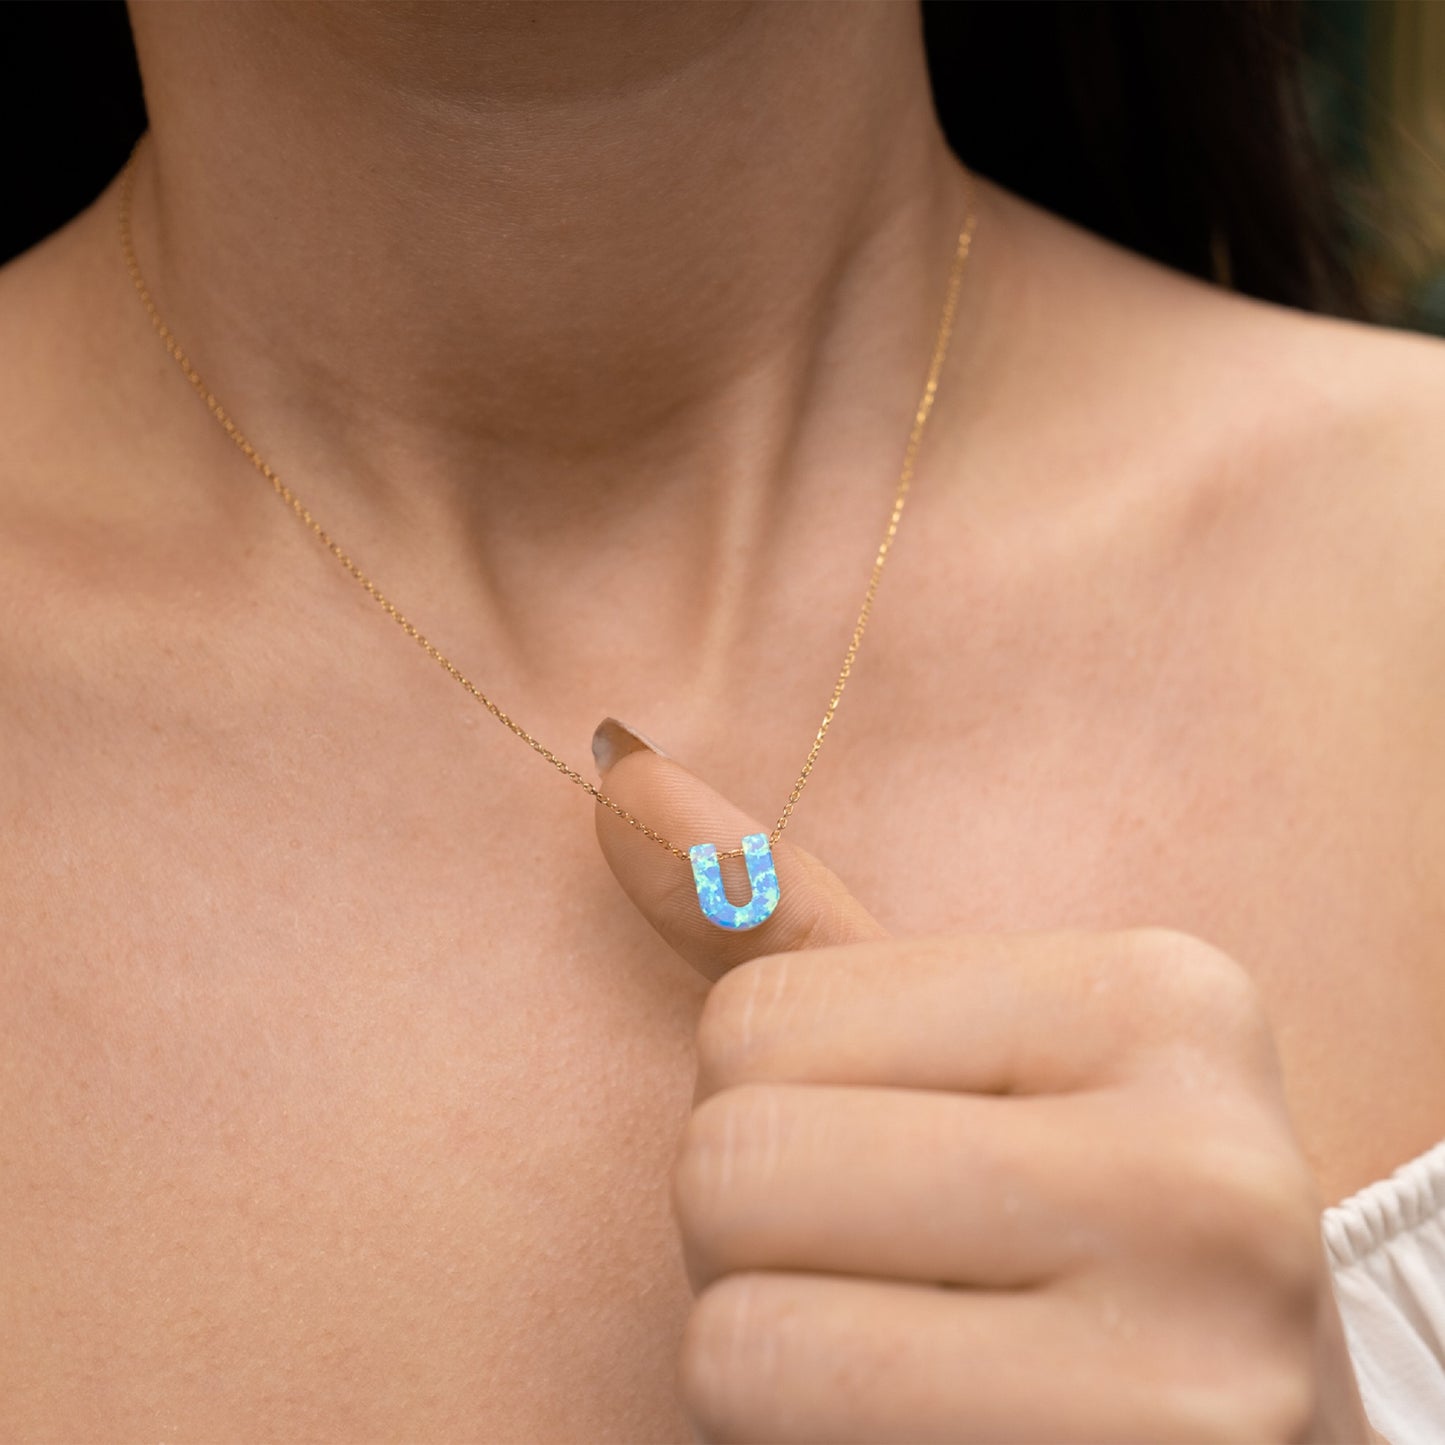 Blue Opal Initial Necklace - "U" letter pendant